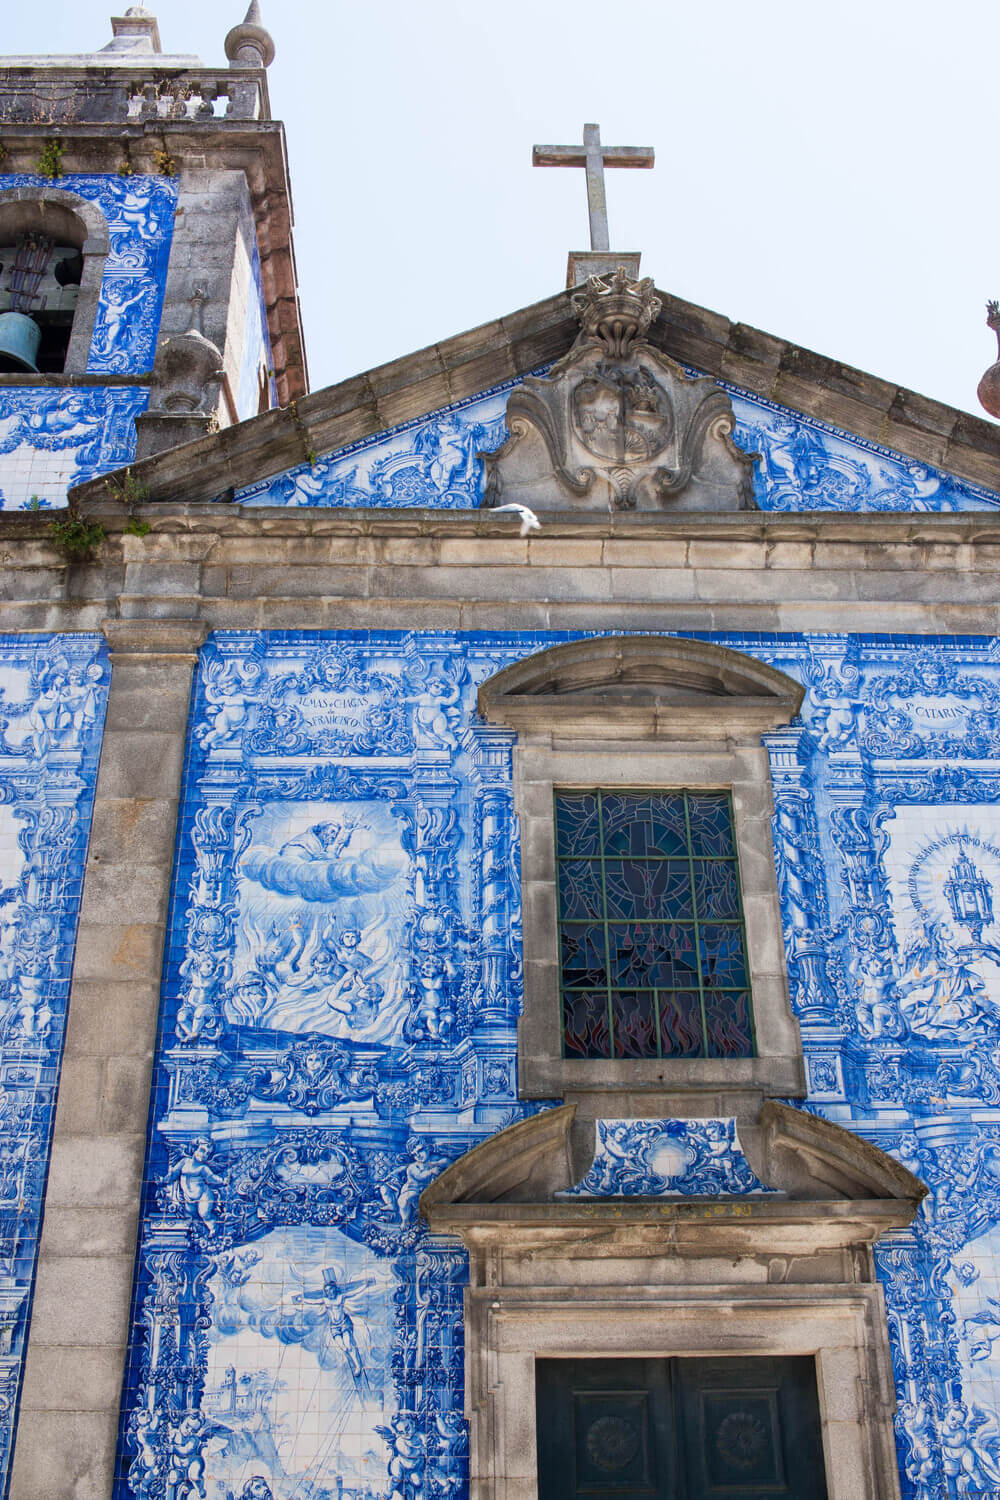 Capela das Almas in Porto, Portugal.